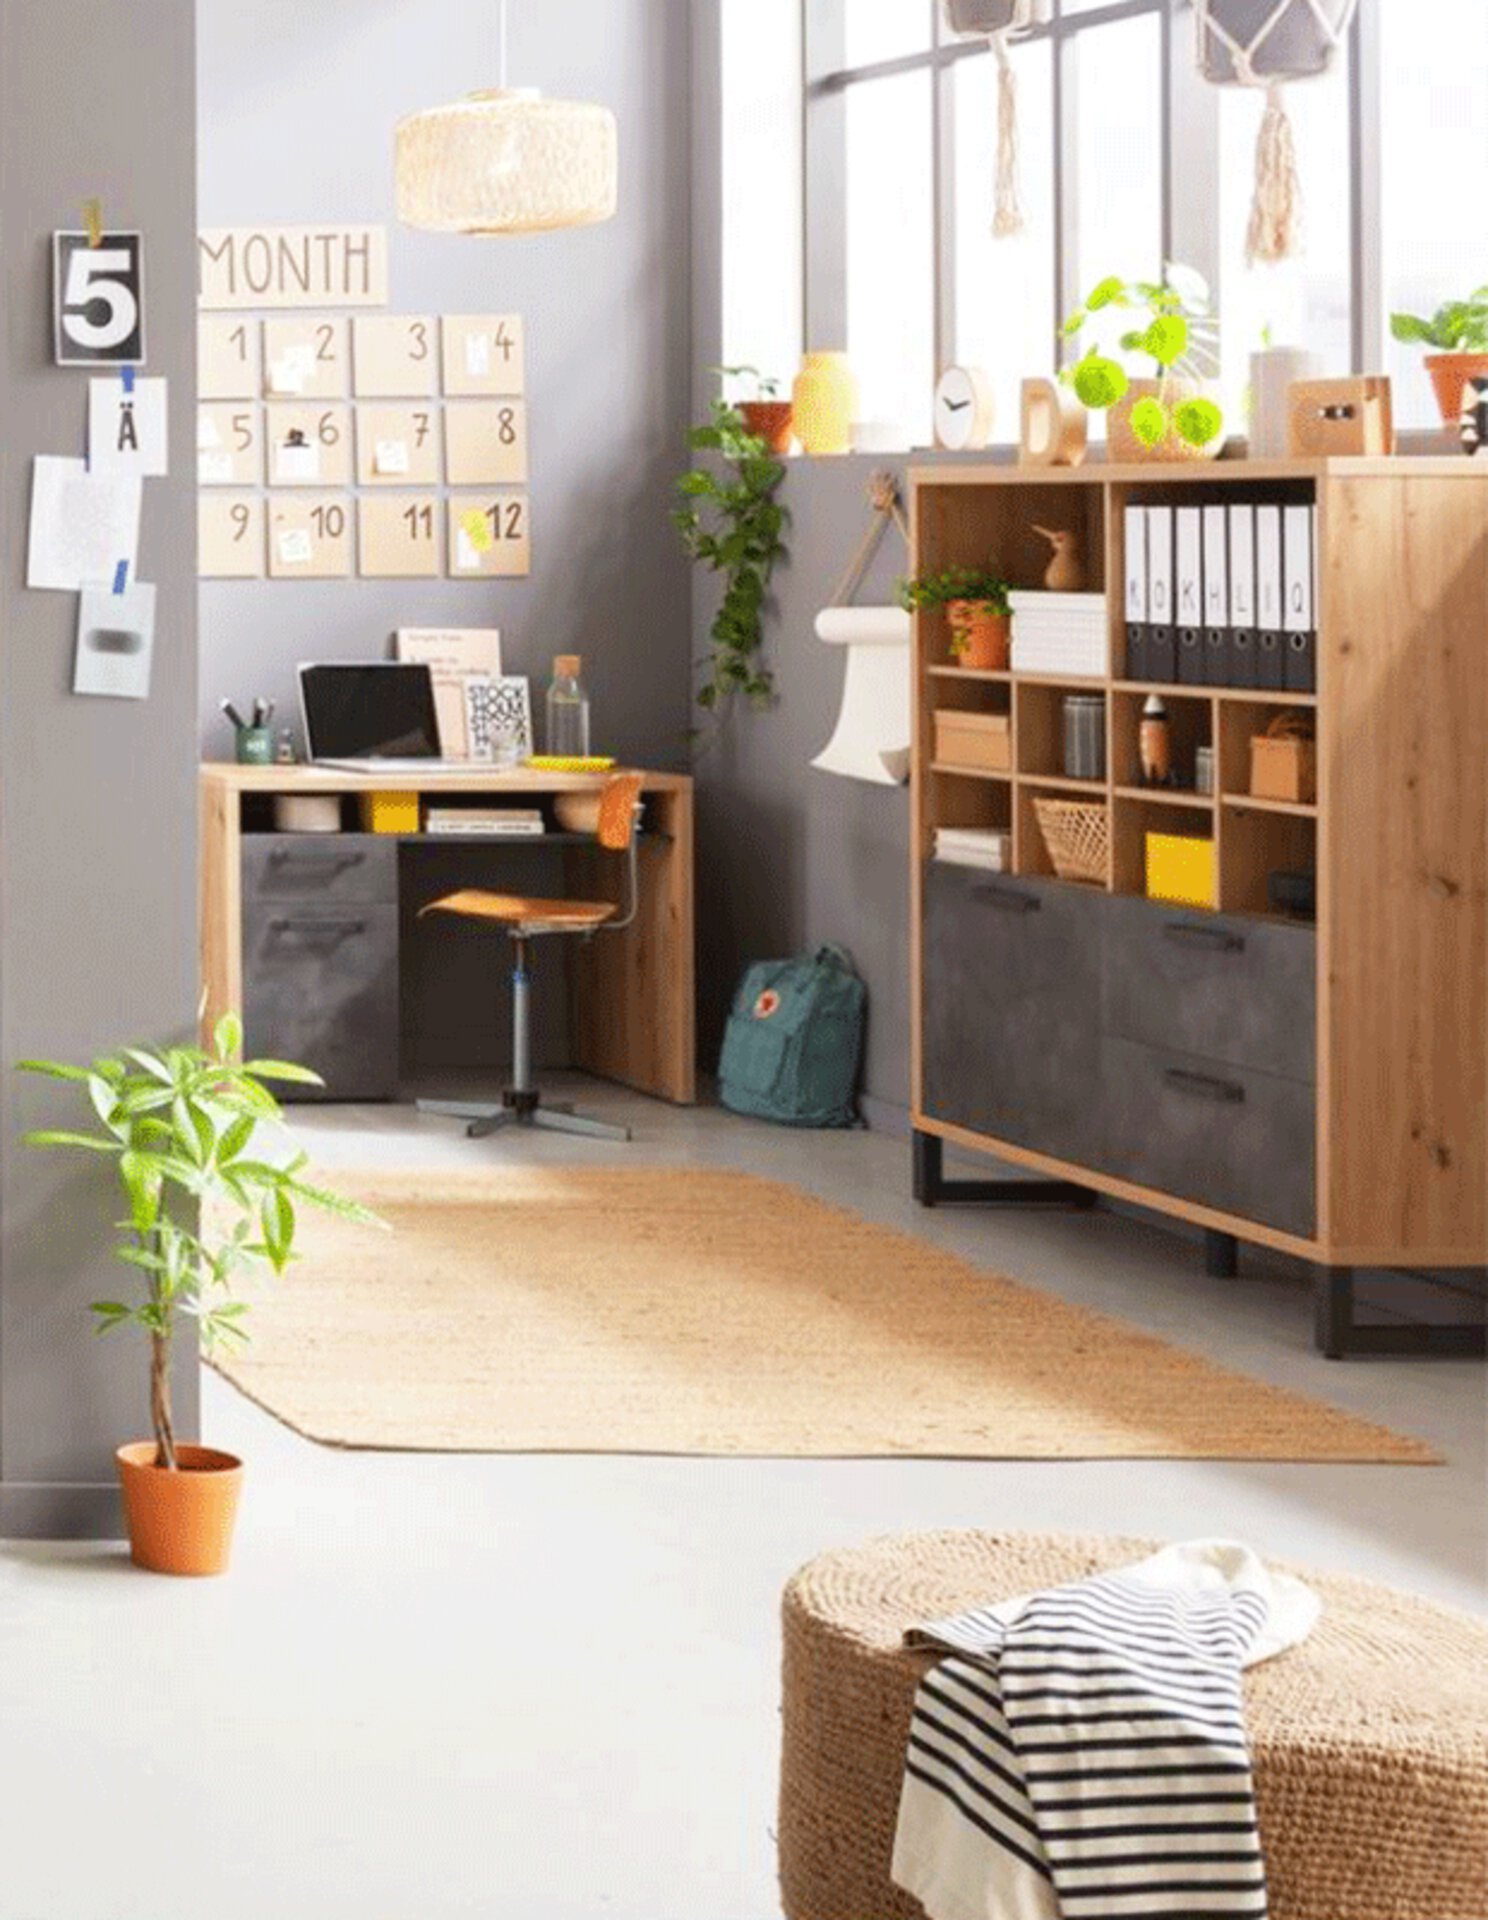 Inspirationsbild zu "WG-Zimmer-Einrichten" zeigt einen hellen Raum mit kompakten Möbellösungen. 